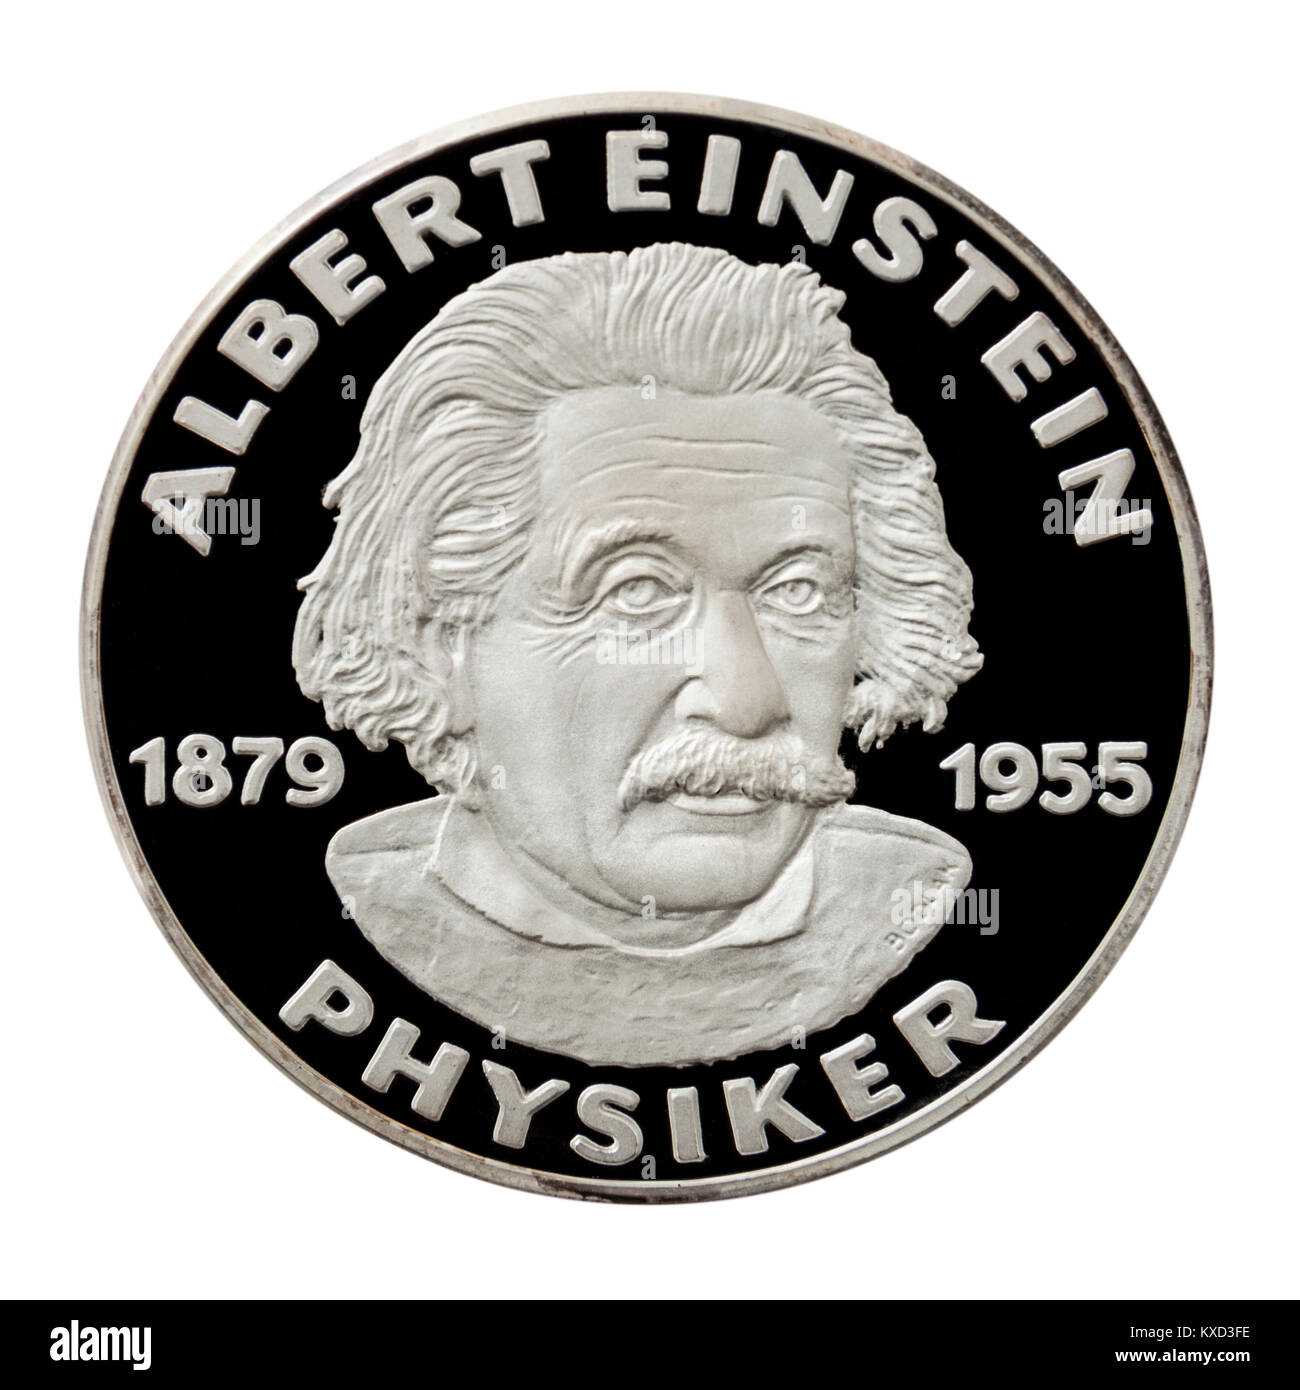 99,9% Beweis Silber Medaillon mit Albert Einstein (1879-1955), der berühmte deutsche Physiker. Stockfoto